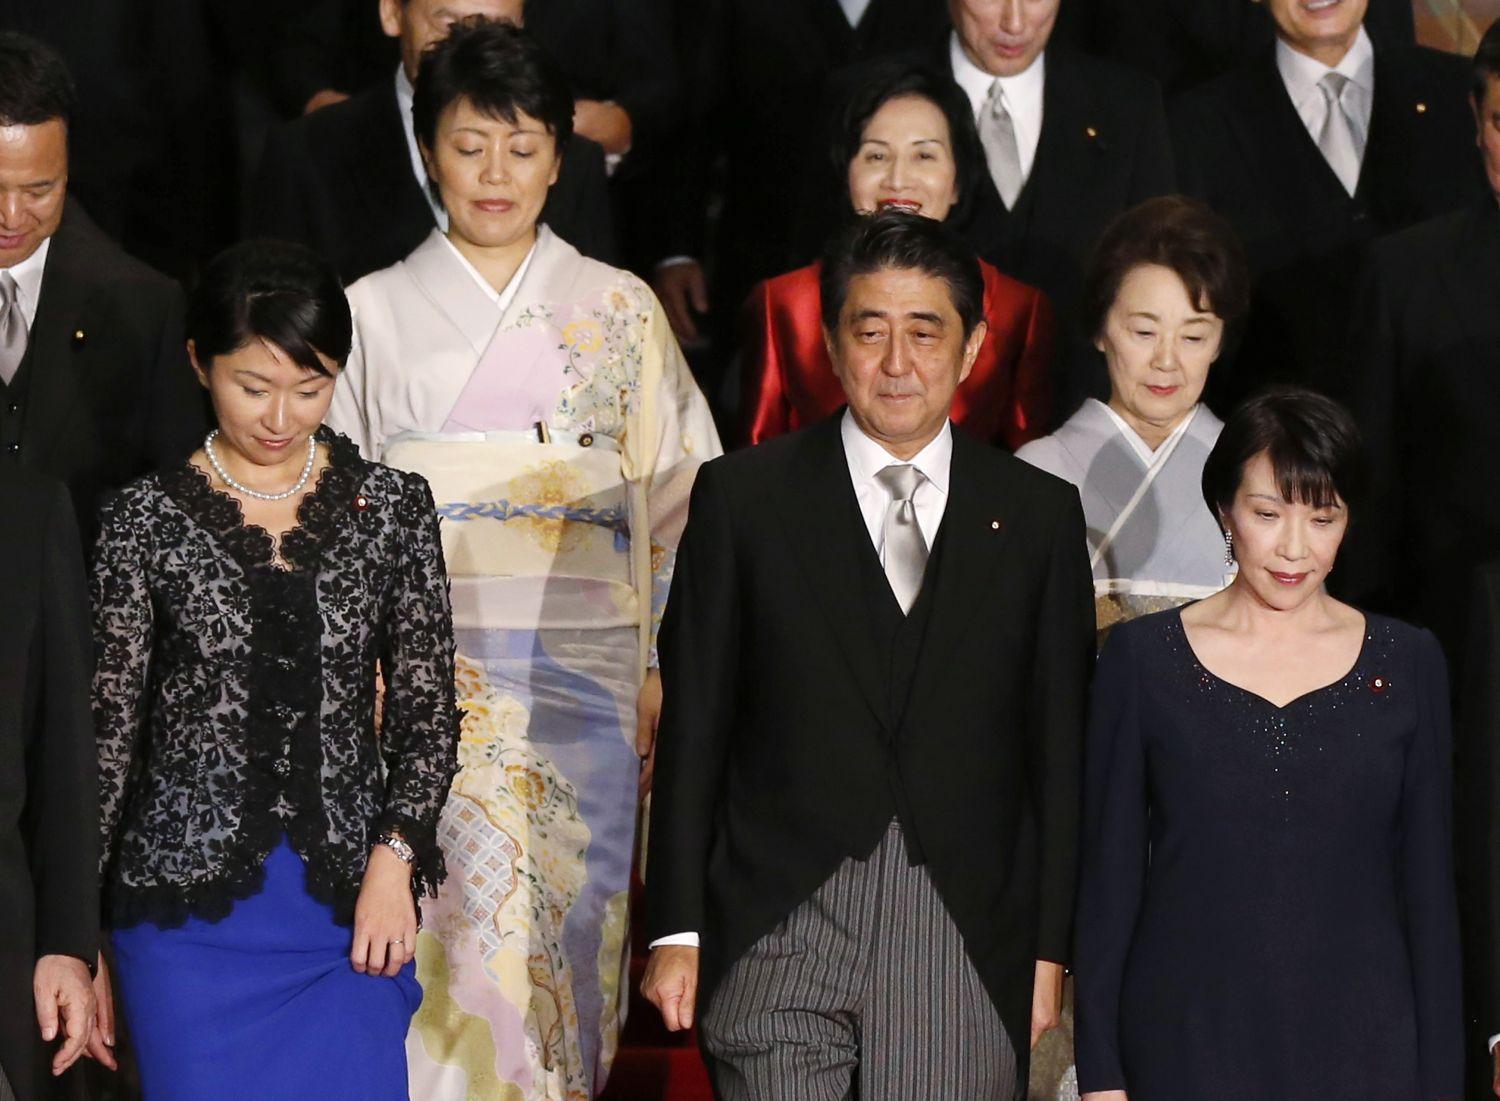 Abe és az öt miniszter asszony szeptember 3-án Tokióban, a bal szélen Takaicsivel